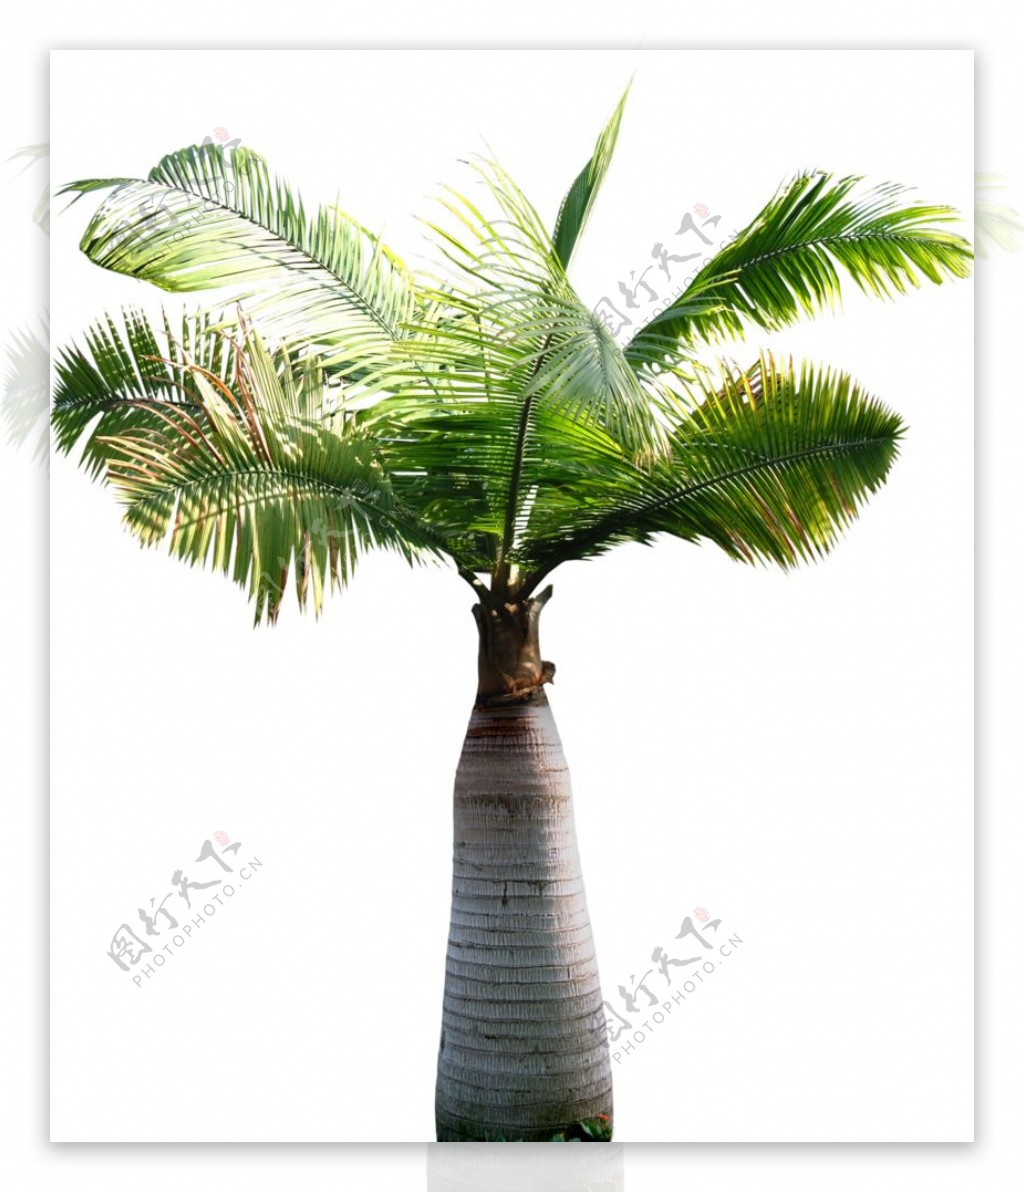 大根椰子树